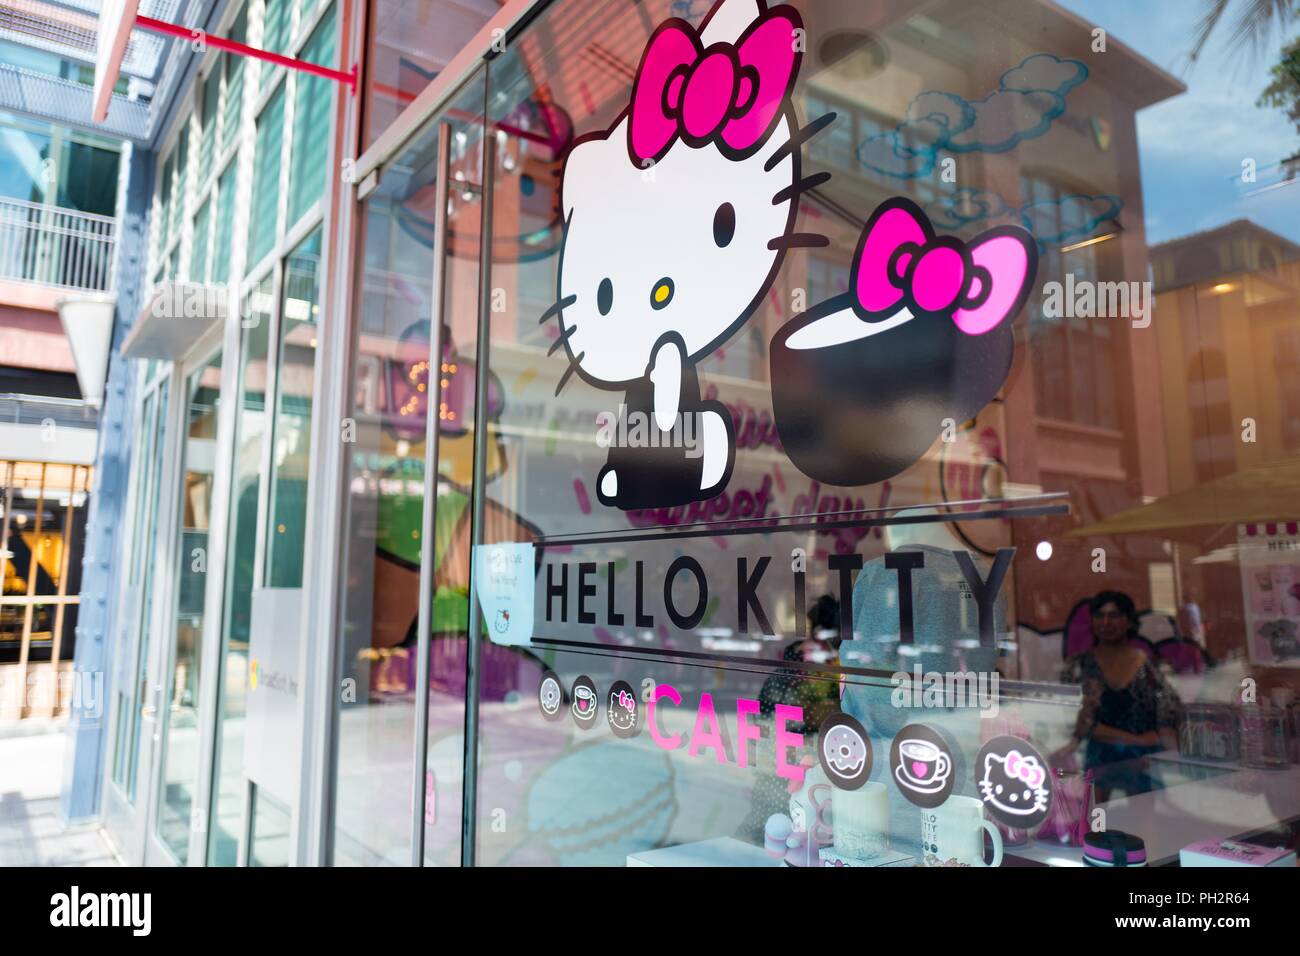 Façade de l'Hello Kitty Café, un café ouvert récemment exploité par la compagnie japonaise Sanrio, sur Santana Row dans la Silicon Valley, San Jose, Californie, le 18 juillet 2018. () Banque D'Images